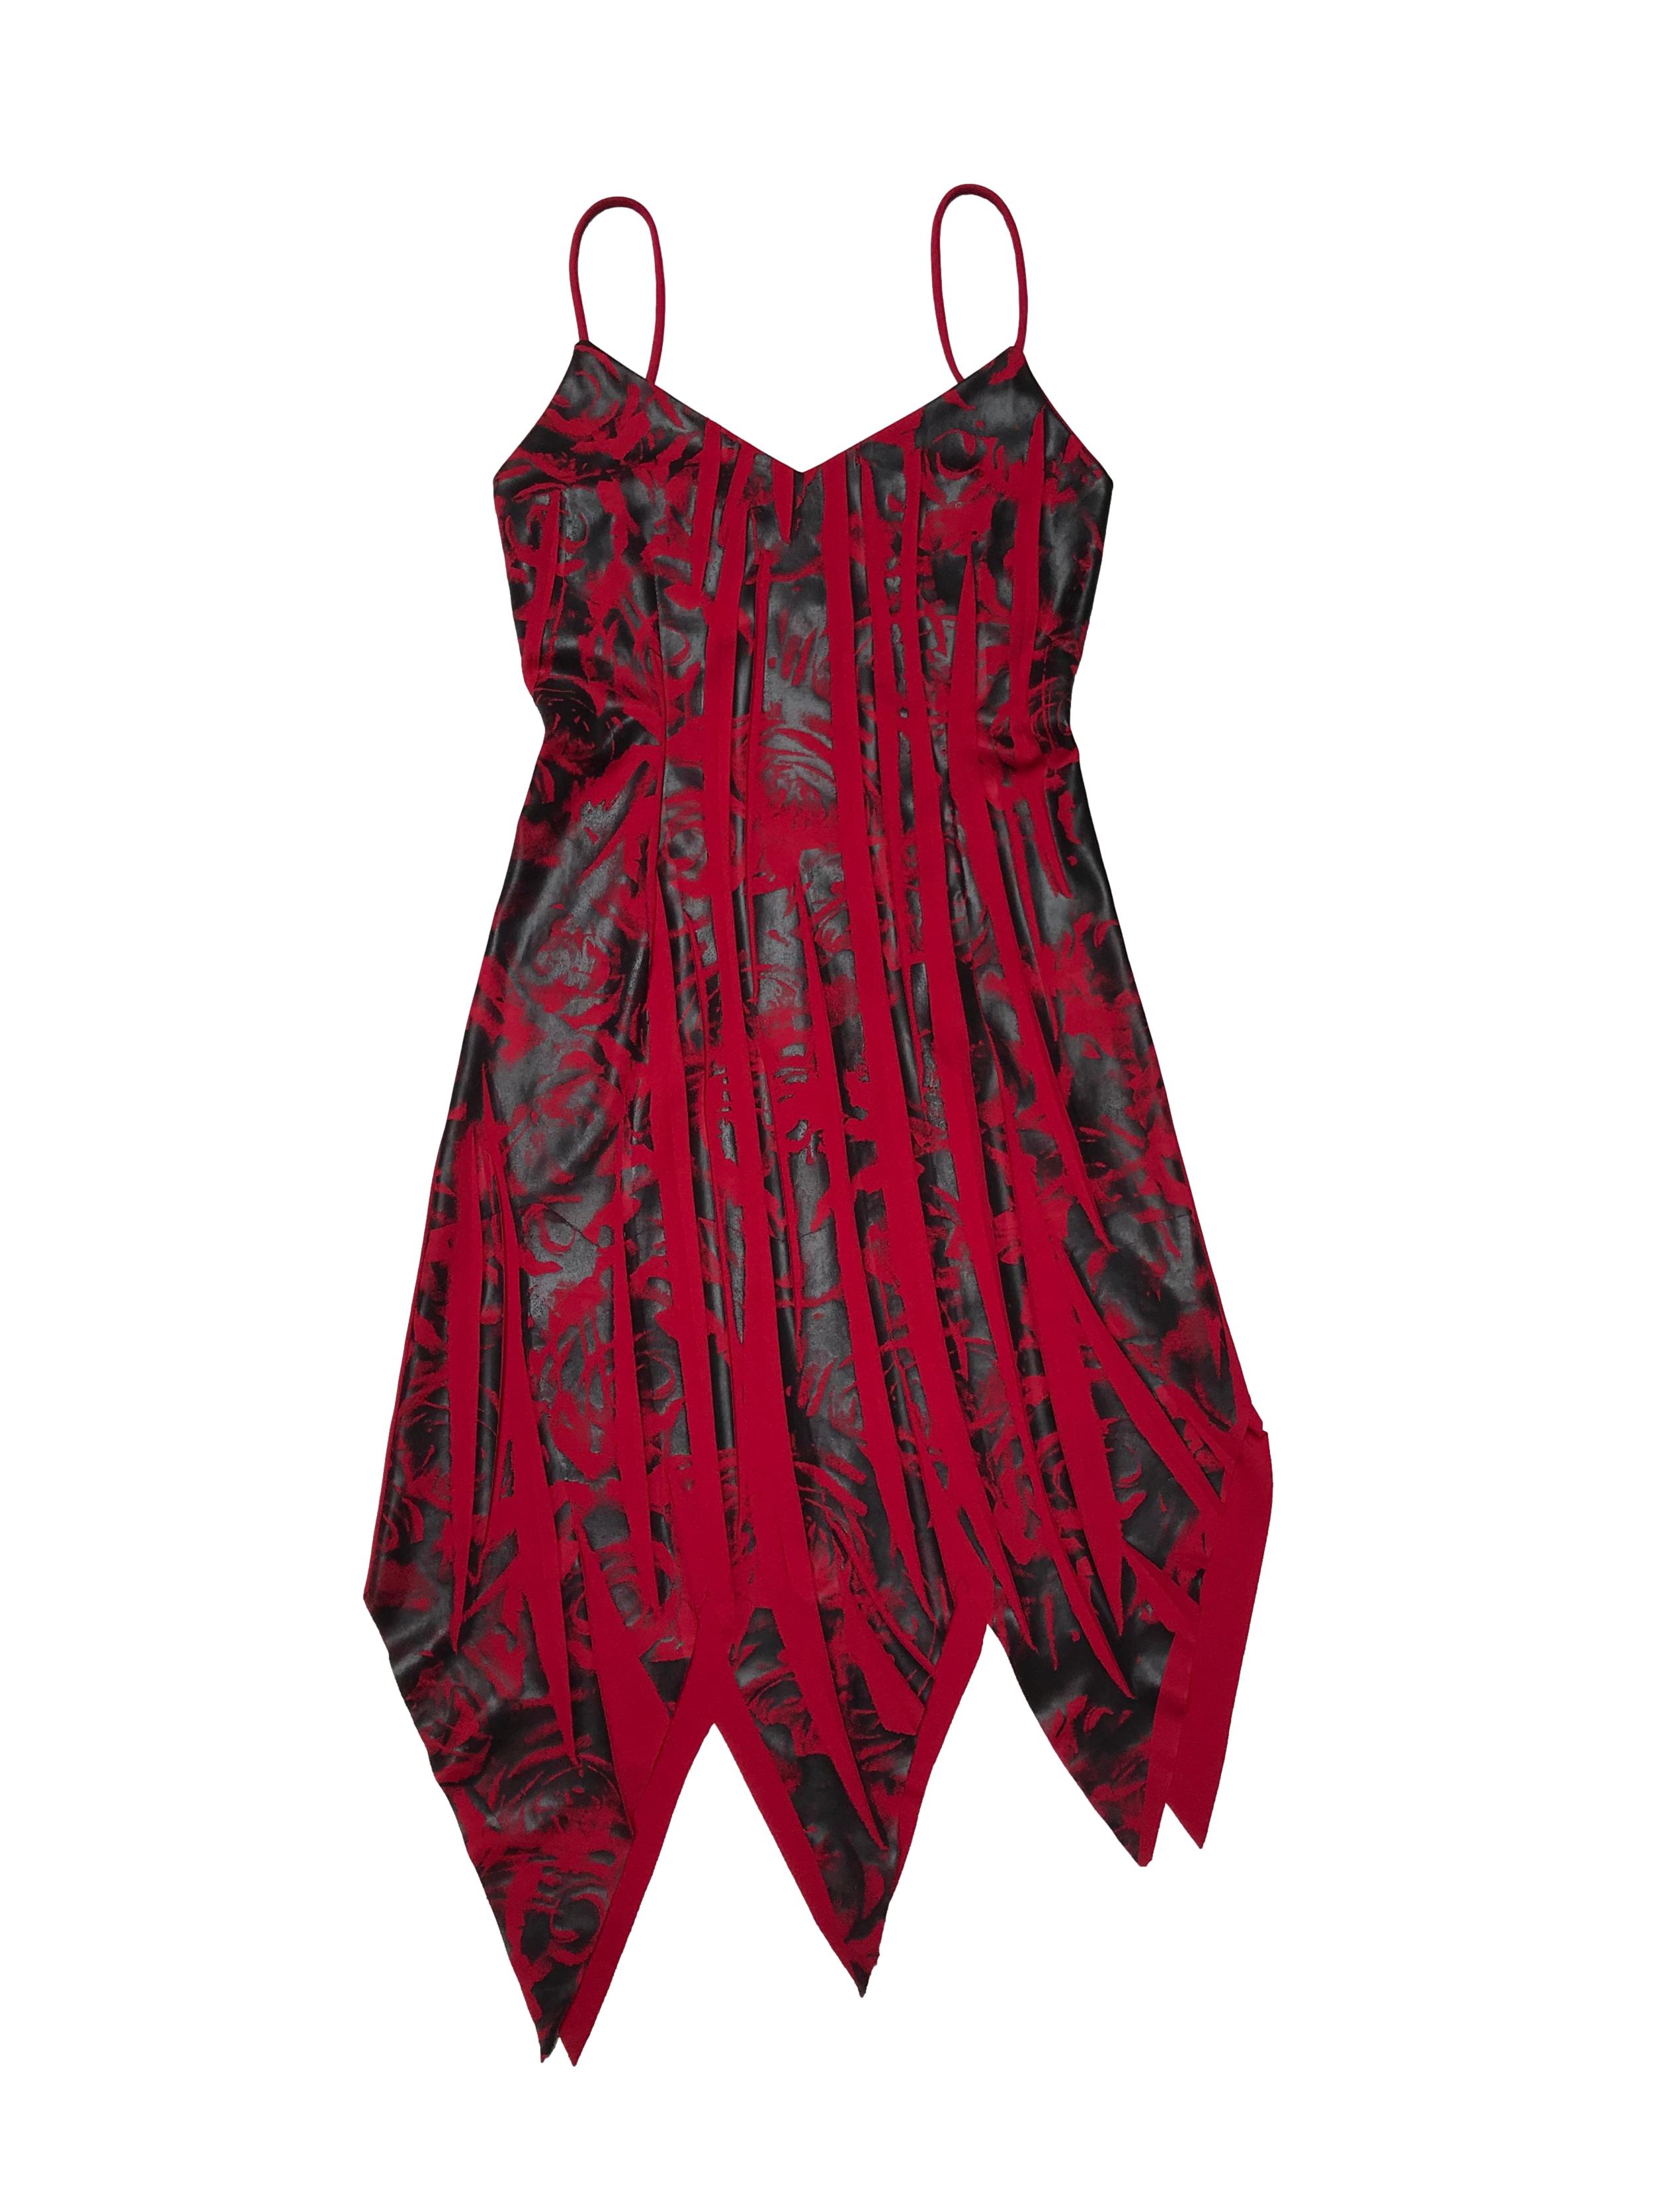 Vestido rojo con sublimado negro, basta en puntas, tiritas que se cruzan en la espalda. Busto hasta 90cm Largo desde pecho 75 - 95cm